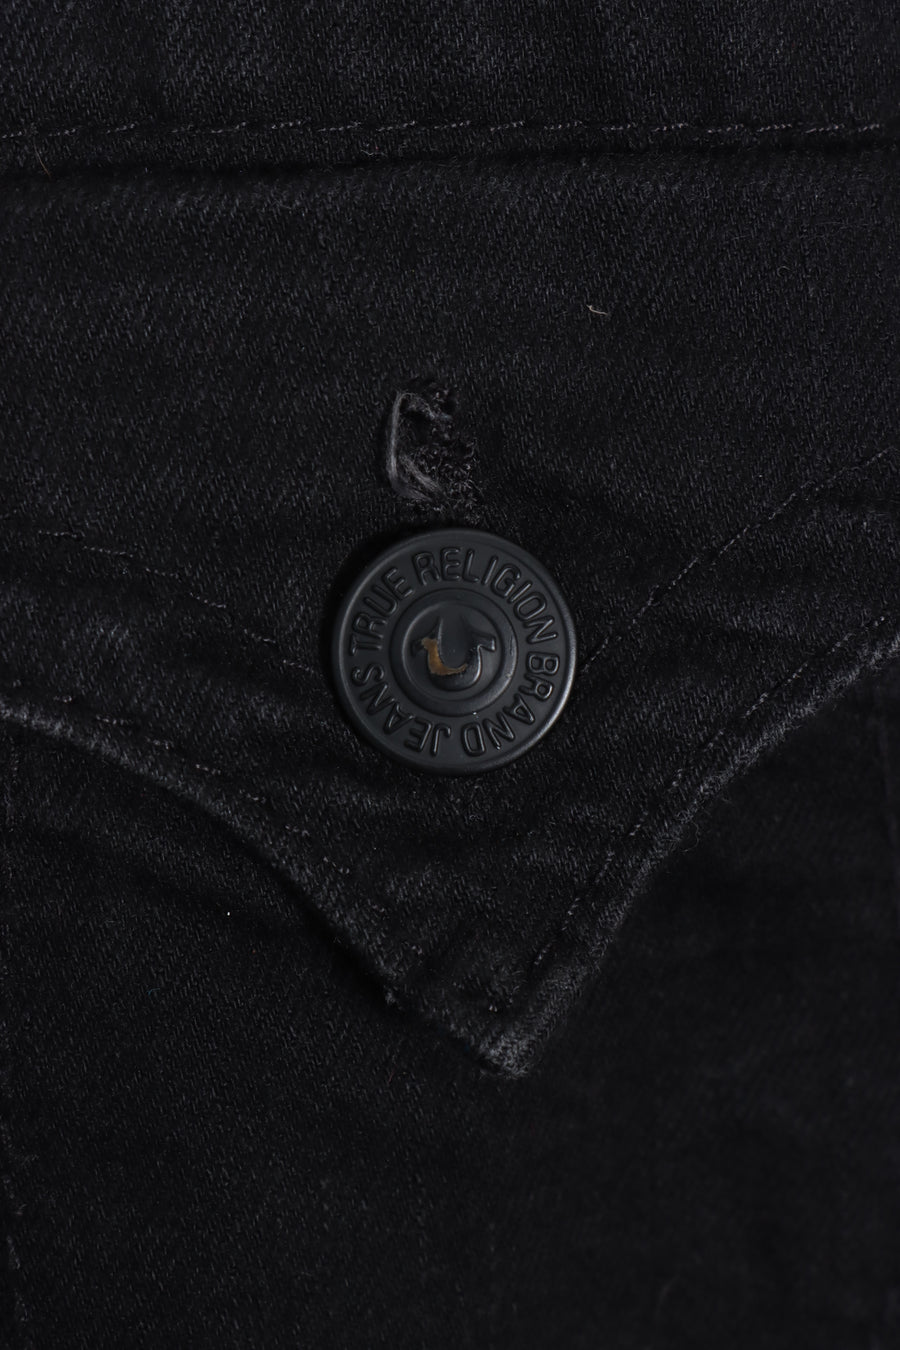 TRUE RELIGION 'Originals' Black Jeans USA Made (28)